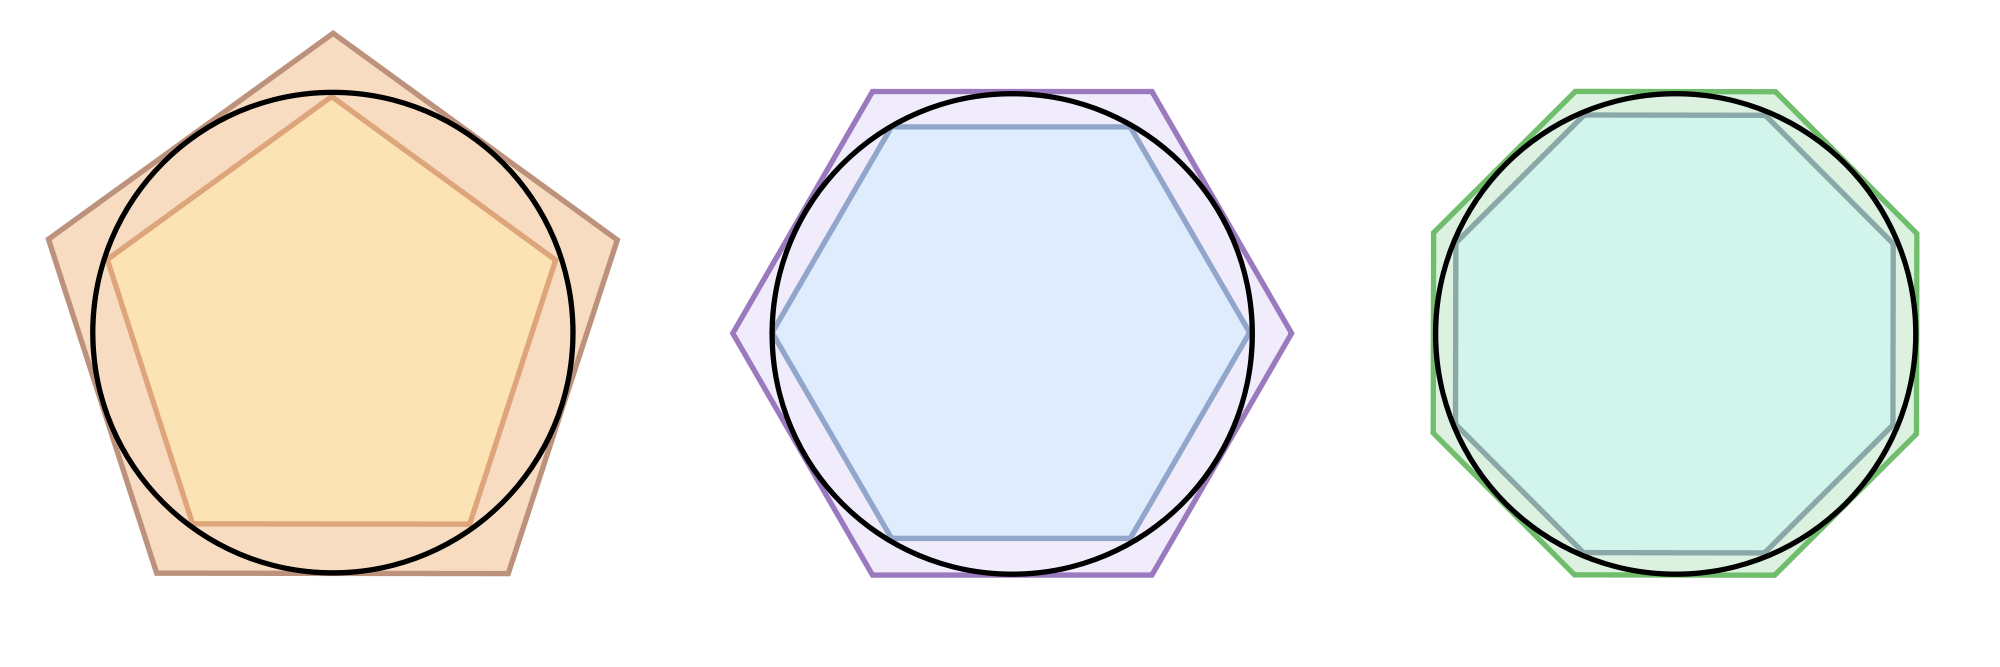 รูปหลายเหลี่ยมของอาร์คิมิดีส (Archimedes’ Polygons)